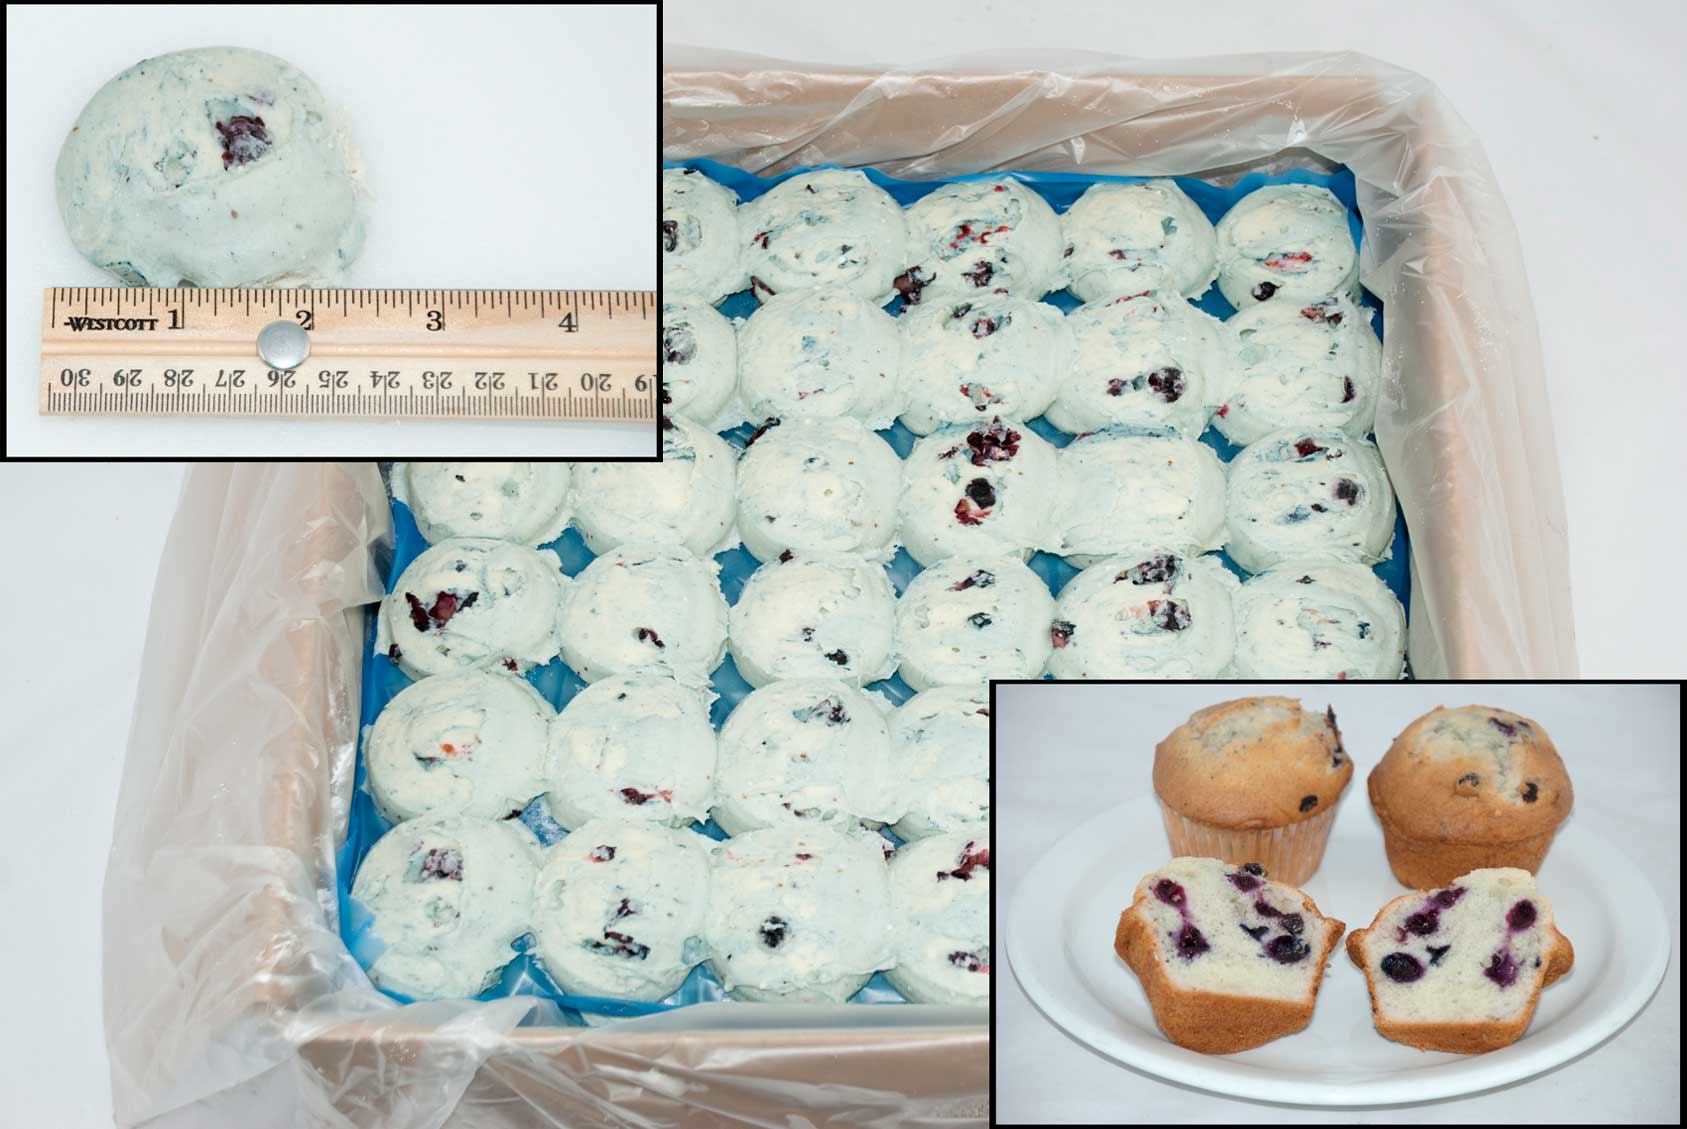 Blueberry Muffin Tops - Pillsbury Baking